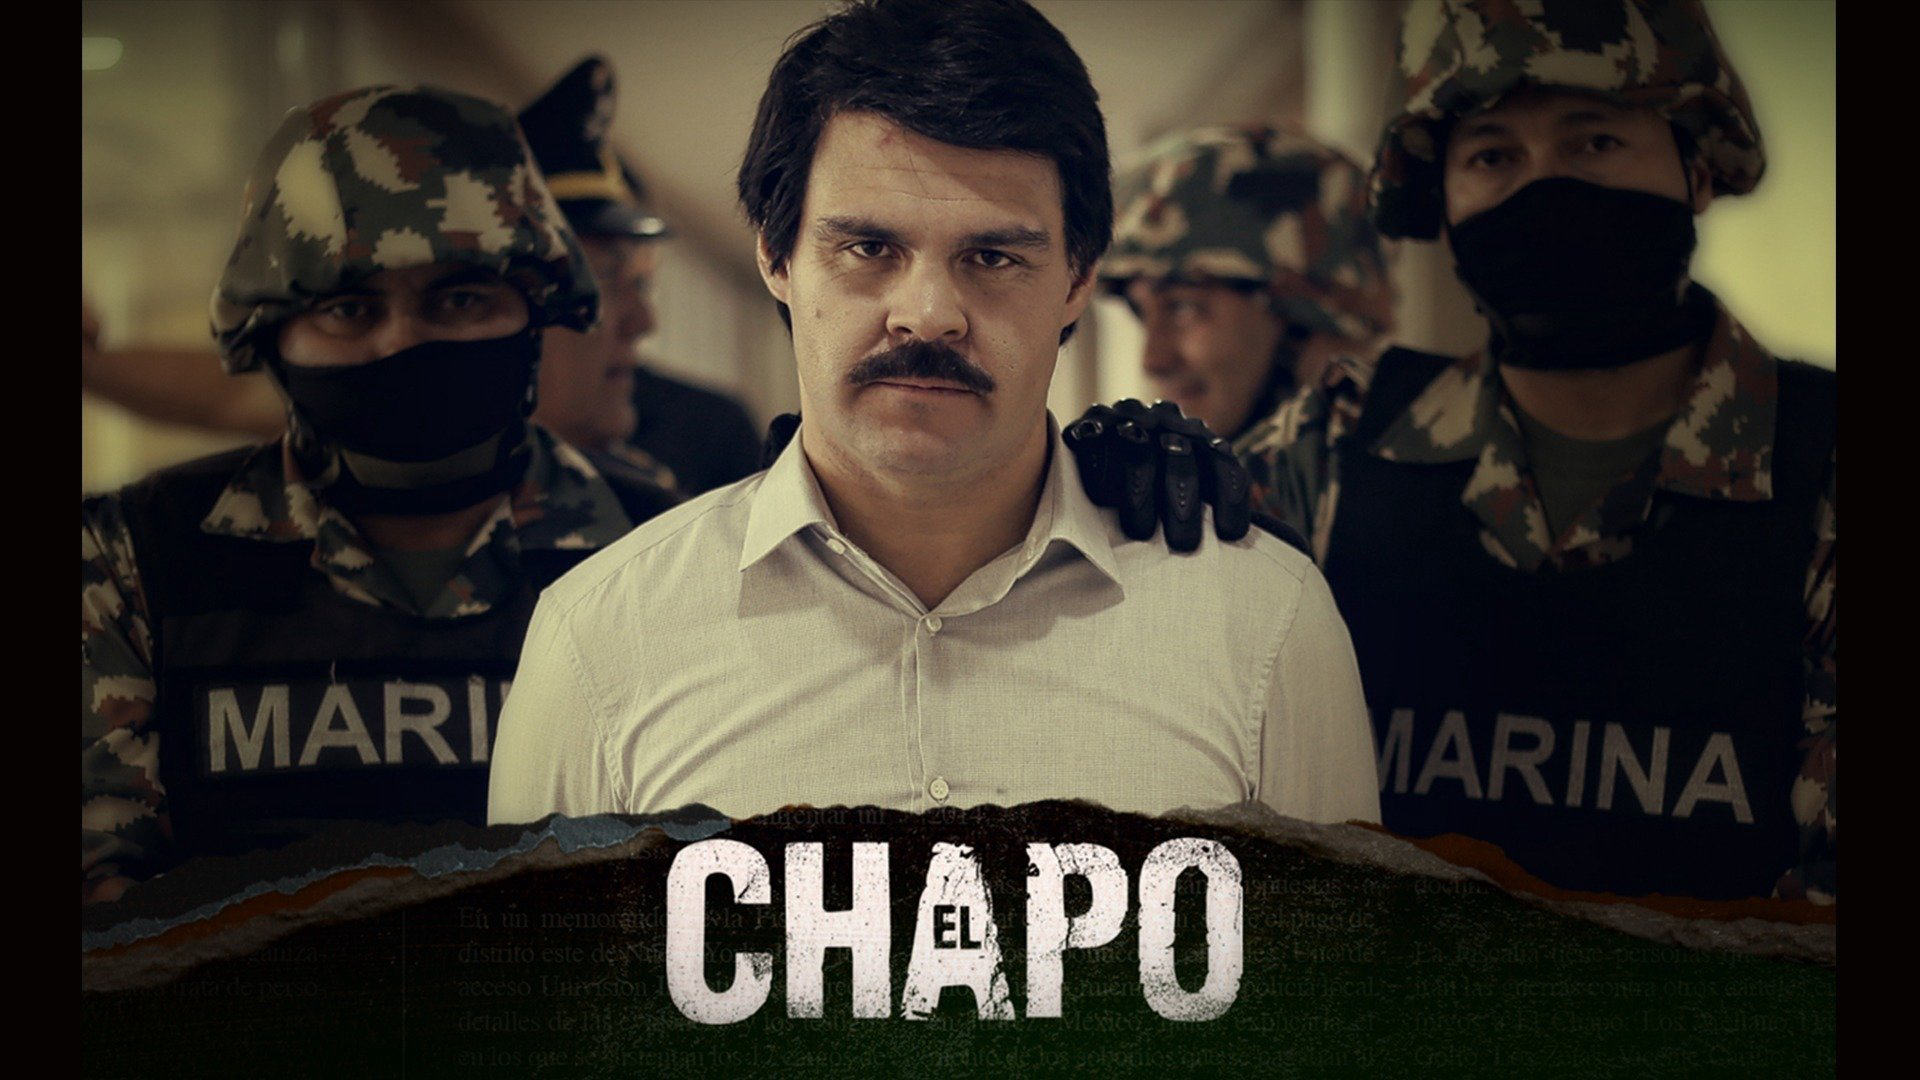 El Chapo (Season 3) / El Chapo (Season 3) (2018)